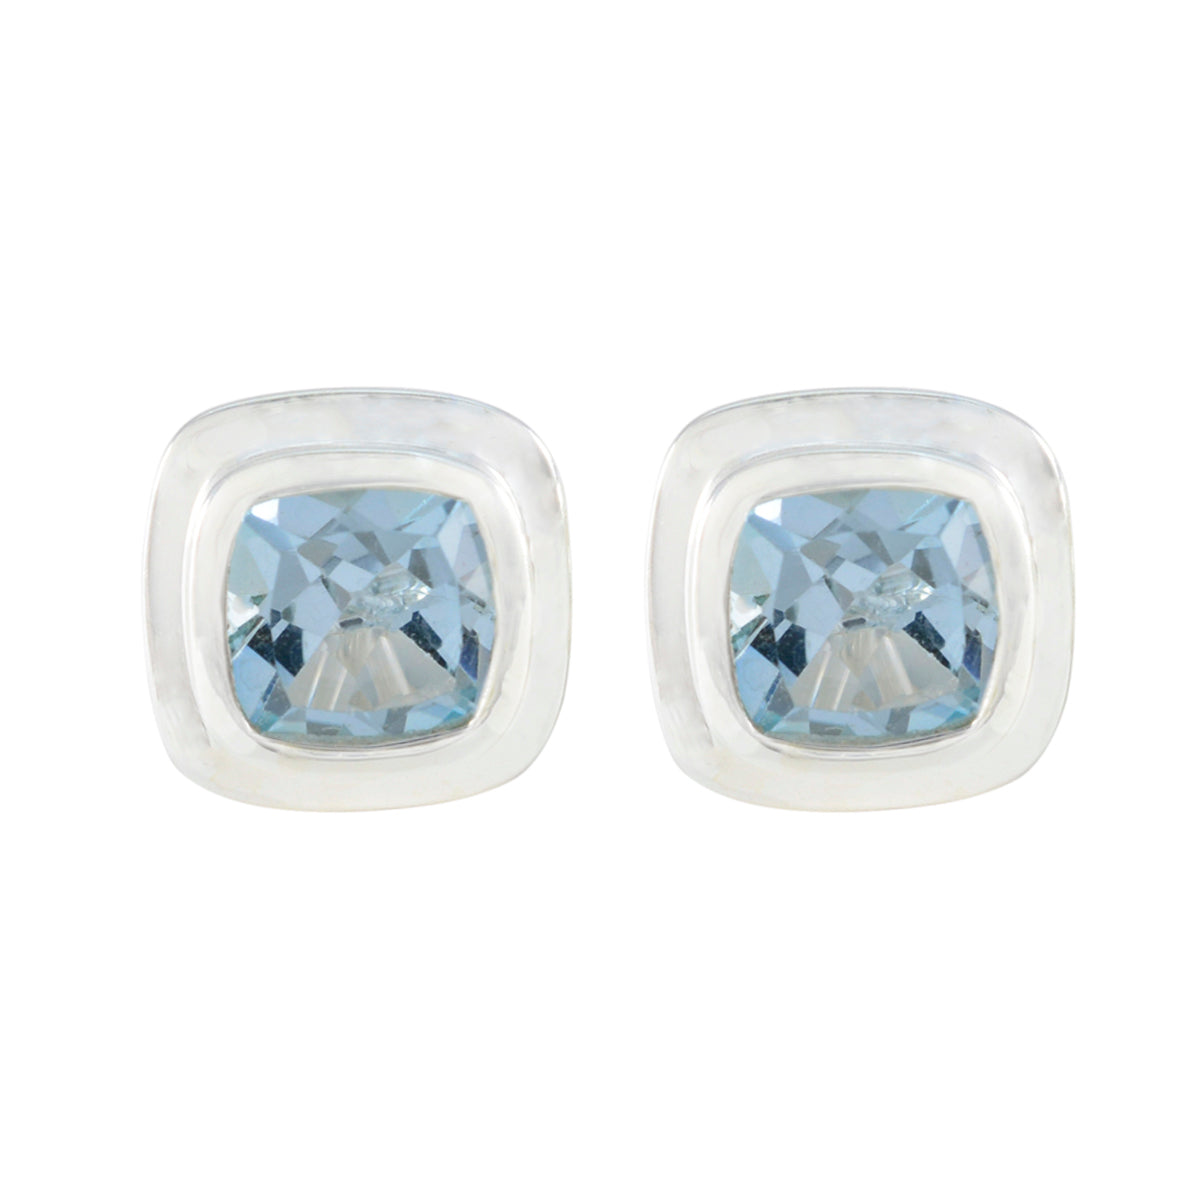 Riyo verführerischer 925er-Sterlingsilber-Ohrring für Damen, blauer Topas-Ohrring, Lünettenfassung, blauer Ohrring-Bolzen-Ohrring